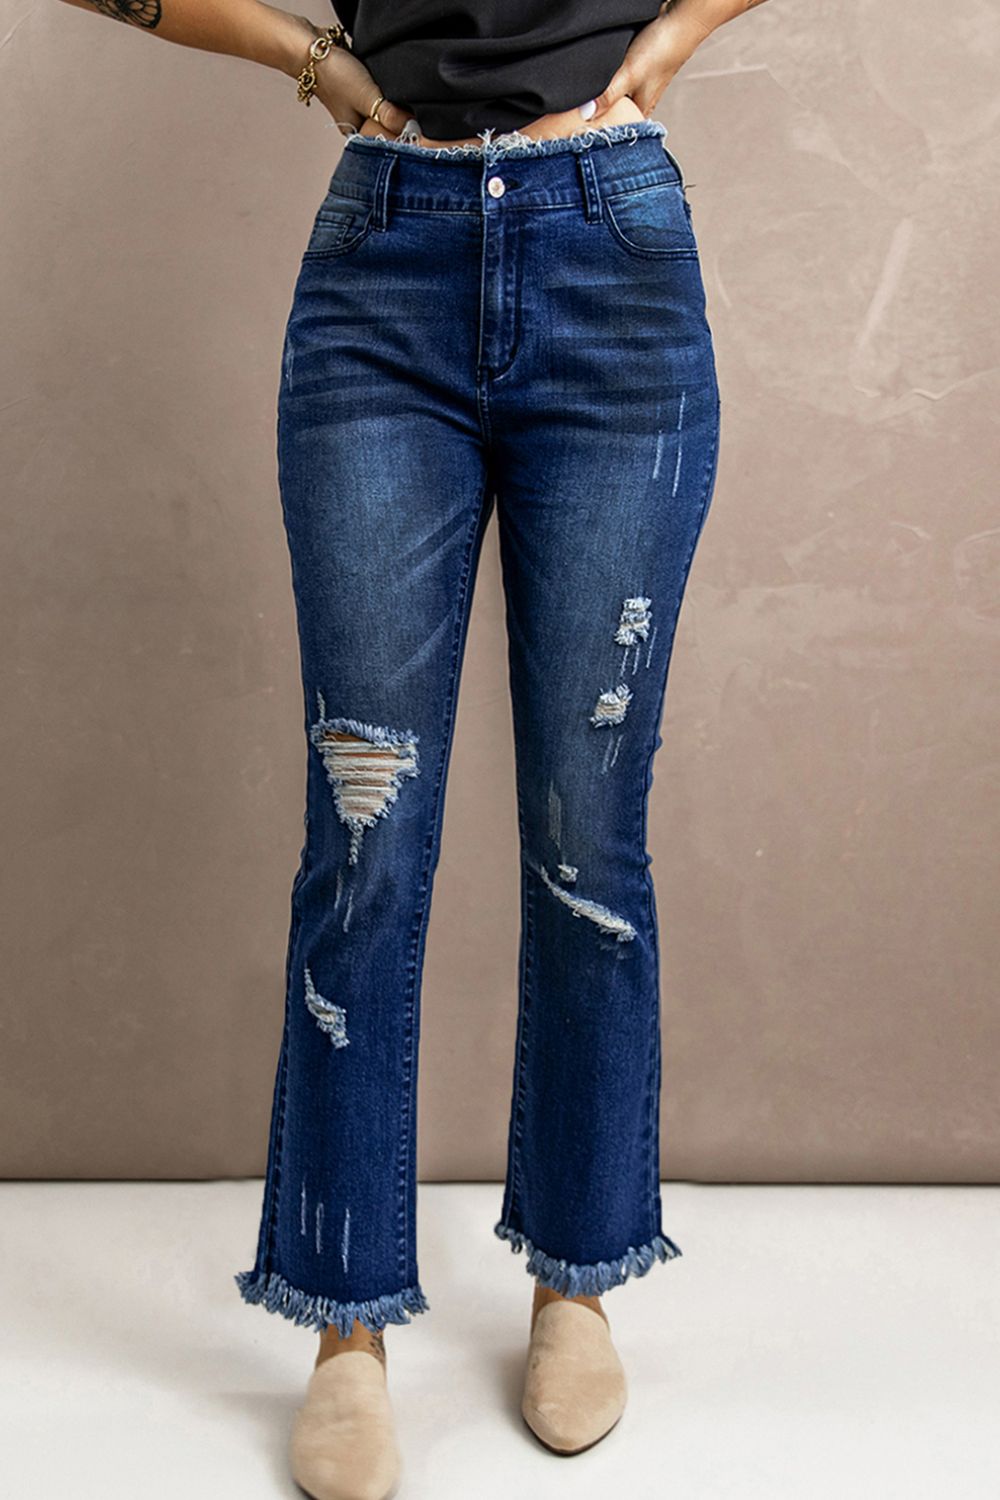 Jeans con dobladillo sin rematar y cintura alta